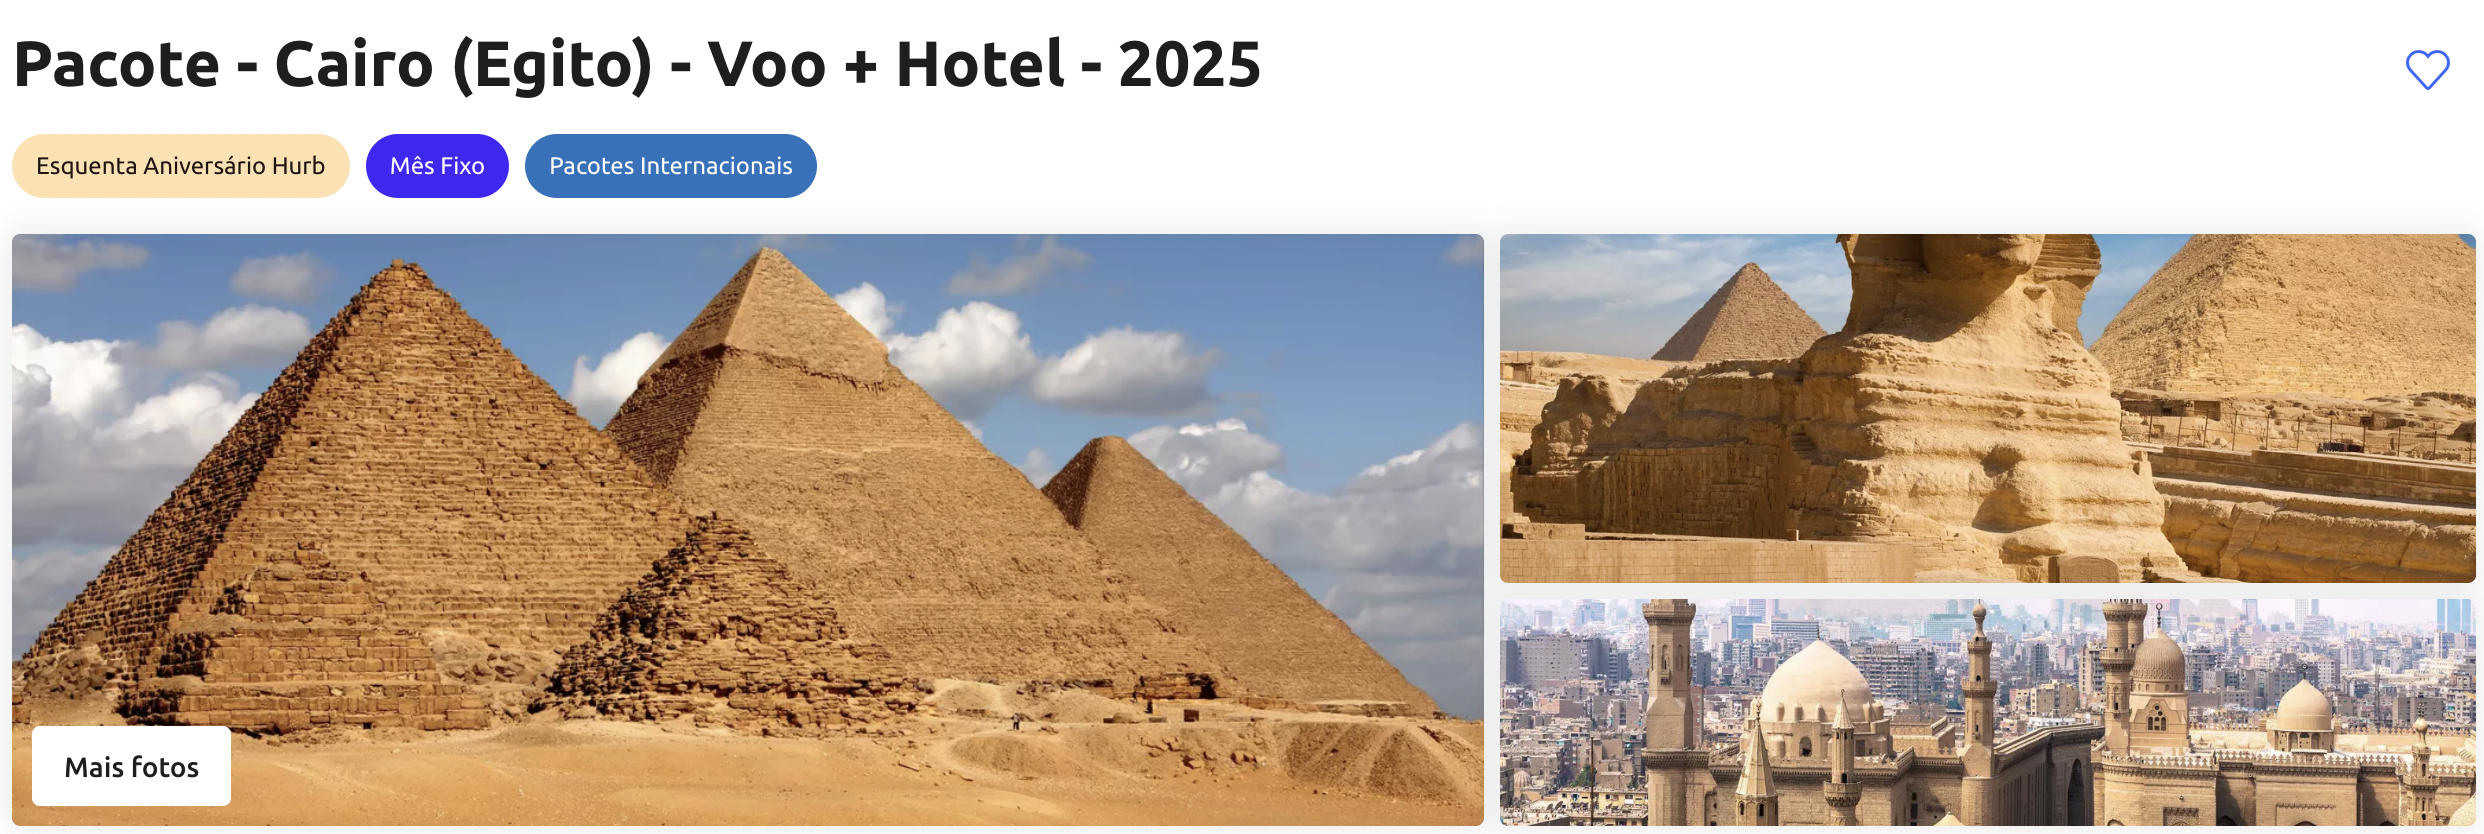 A imagem é um banner promocional para um pacote de viagem ao Cairo, no Egito, que inclui voo e hotel para o ano de 2025. No topo, está o título "Pacote - Cairo (Egito) - Voo + Hotel - 2025", com ícones promocionais e botões de interação como corações e opções de compartilhamento. Abaixo do título, há três fotografias dispostas lado a lado. A primeira mostra uma pirâmide de perto, destacando a imensa escala e a impressionante engenharia dos antigos egípcios. A segunda foto captura duas pirâmides ao fundo com a Grande Esfinge de Gizé em primeiro plano, ilustrando a proximidade entre esses monumentos emblemáticos. A terceira foto oferece uma vista aérea do Cairo contemporâneo, com minaretes e cúpulas tradicionais em primeiro plano, contrastando com a moderna paisagem urbana ao fundo. O banner convida os usuários a explorar mais fotos e destaca a exclusividade do pacote de aniversário da agência de viagens.